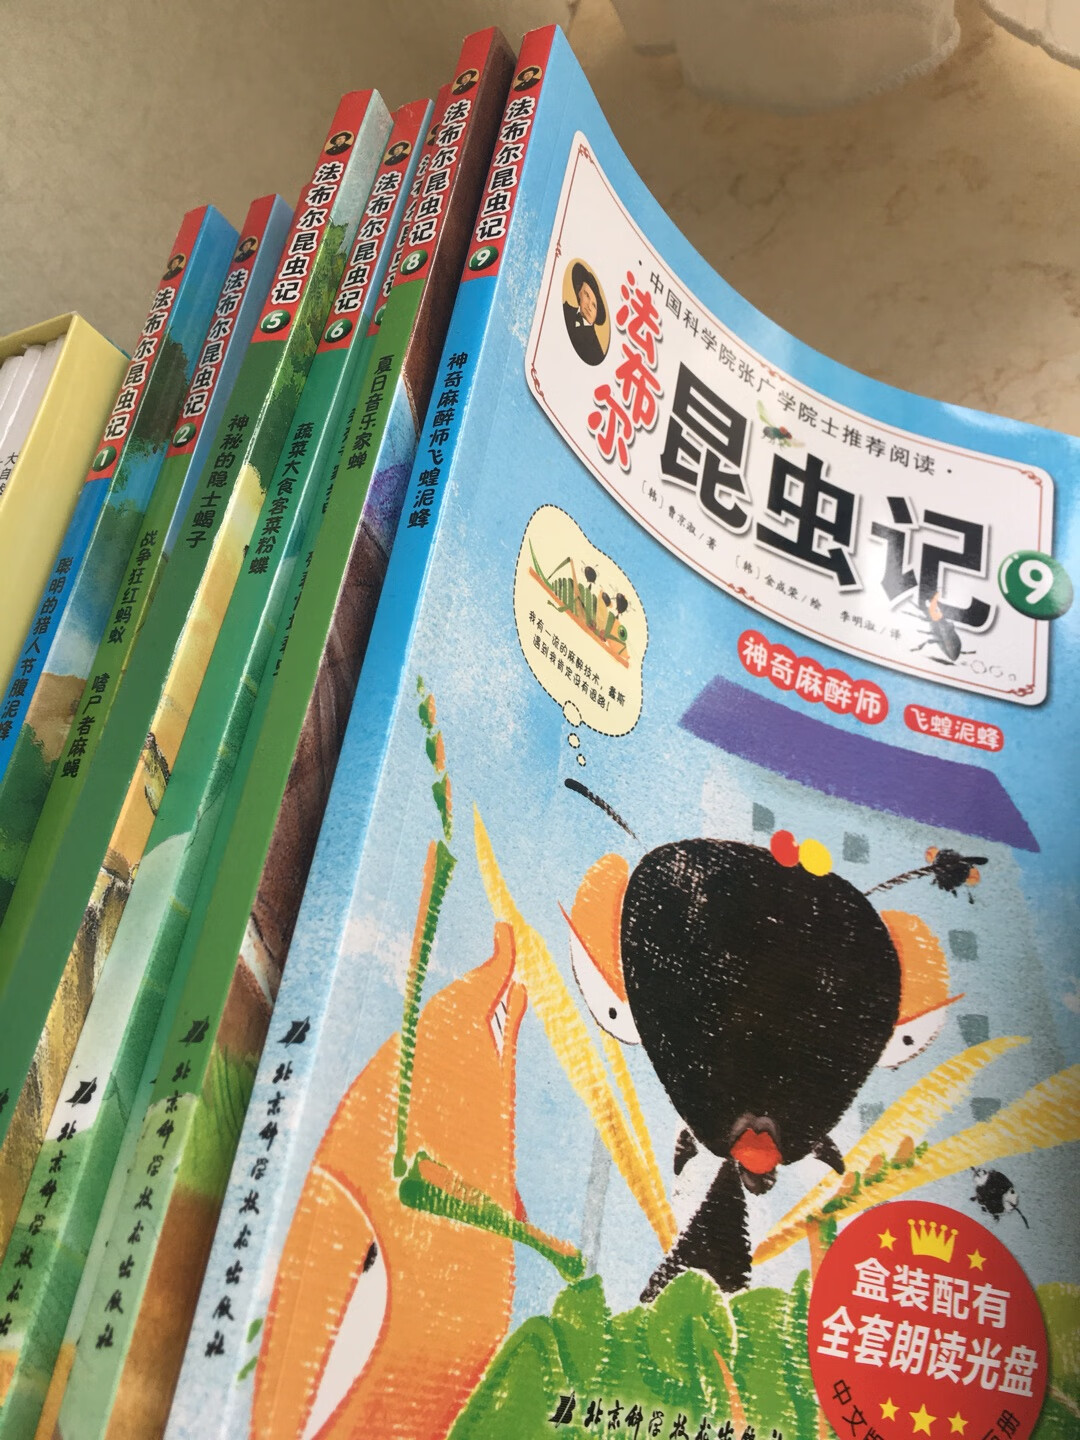 这套非故事类绘本也很棒，教孩子认识各种虫子，家里书太多了，真的不能再买了，要多多看书了。